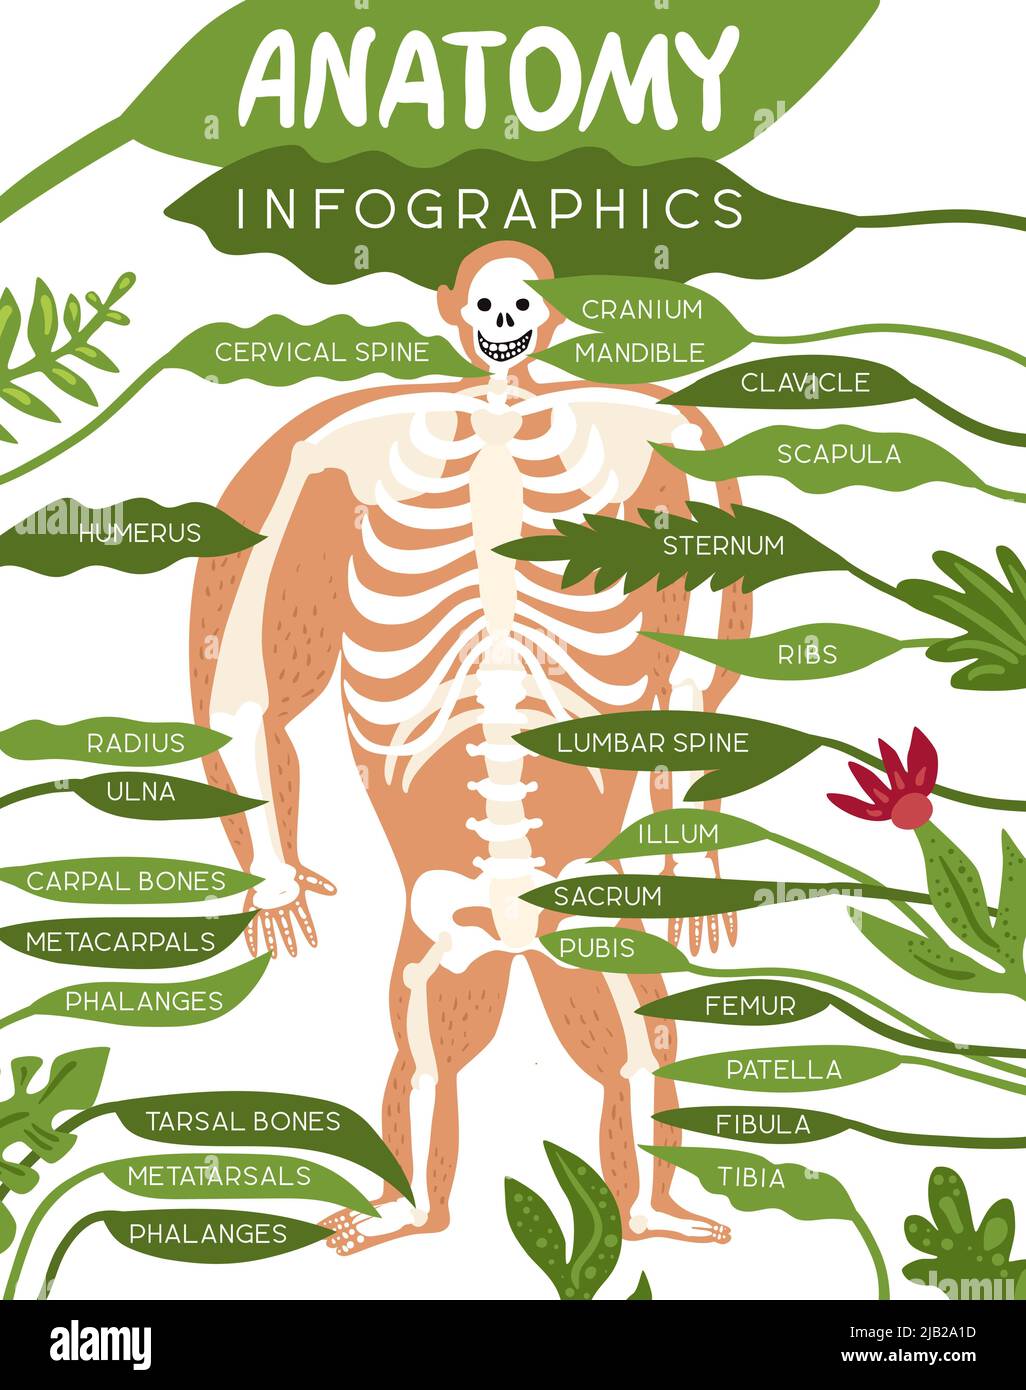 Layout der Skelett-Anatomie-Infografiken mit menschlichem Körperbild und detaillierter Beschreibung der Bestandteile des flachen Vektorgrafiks des Skelettsystems Stock Vektor